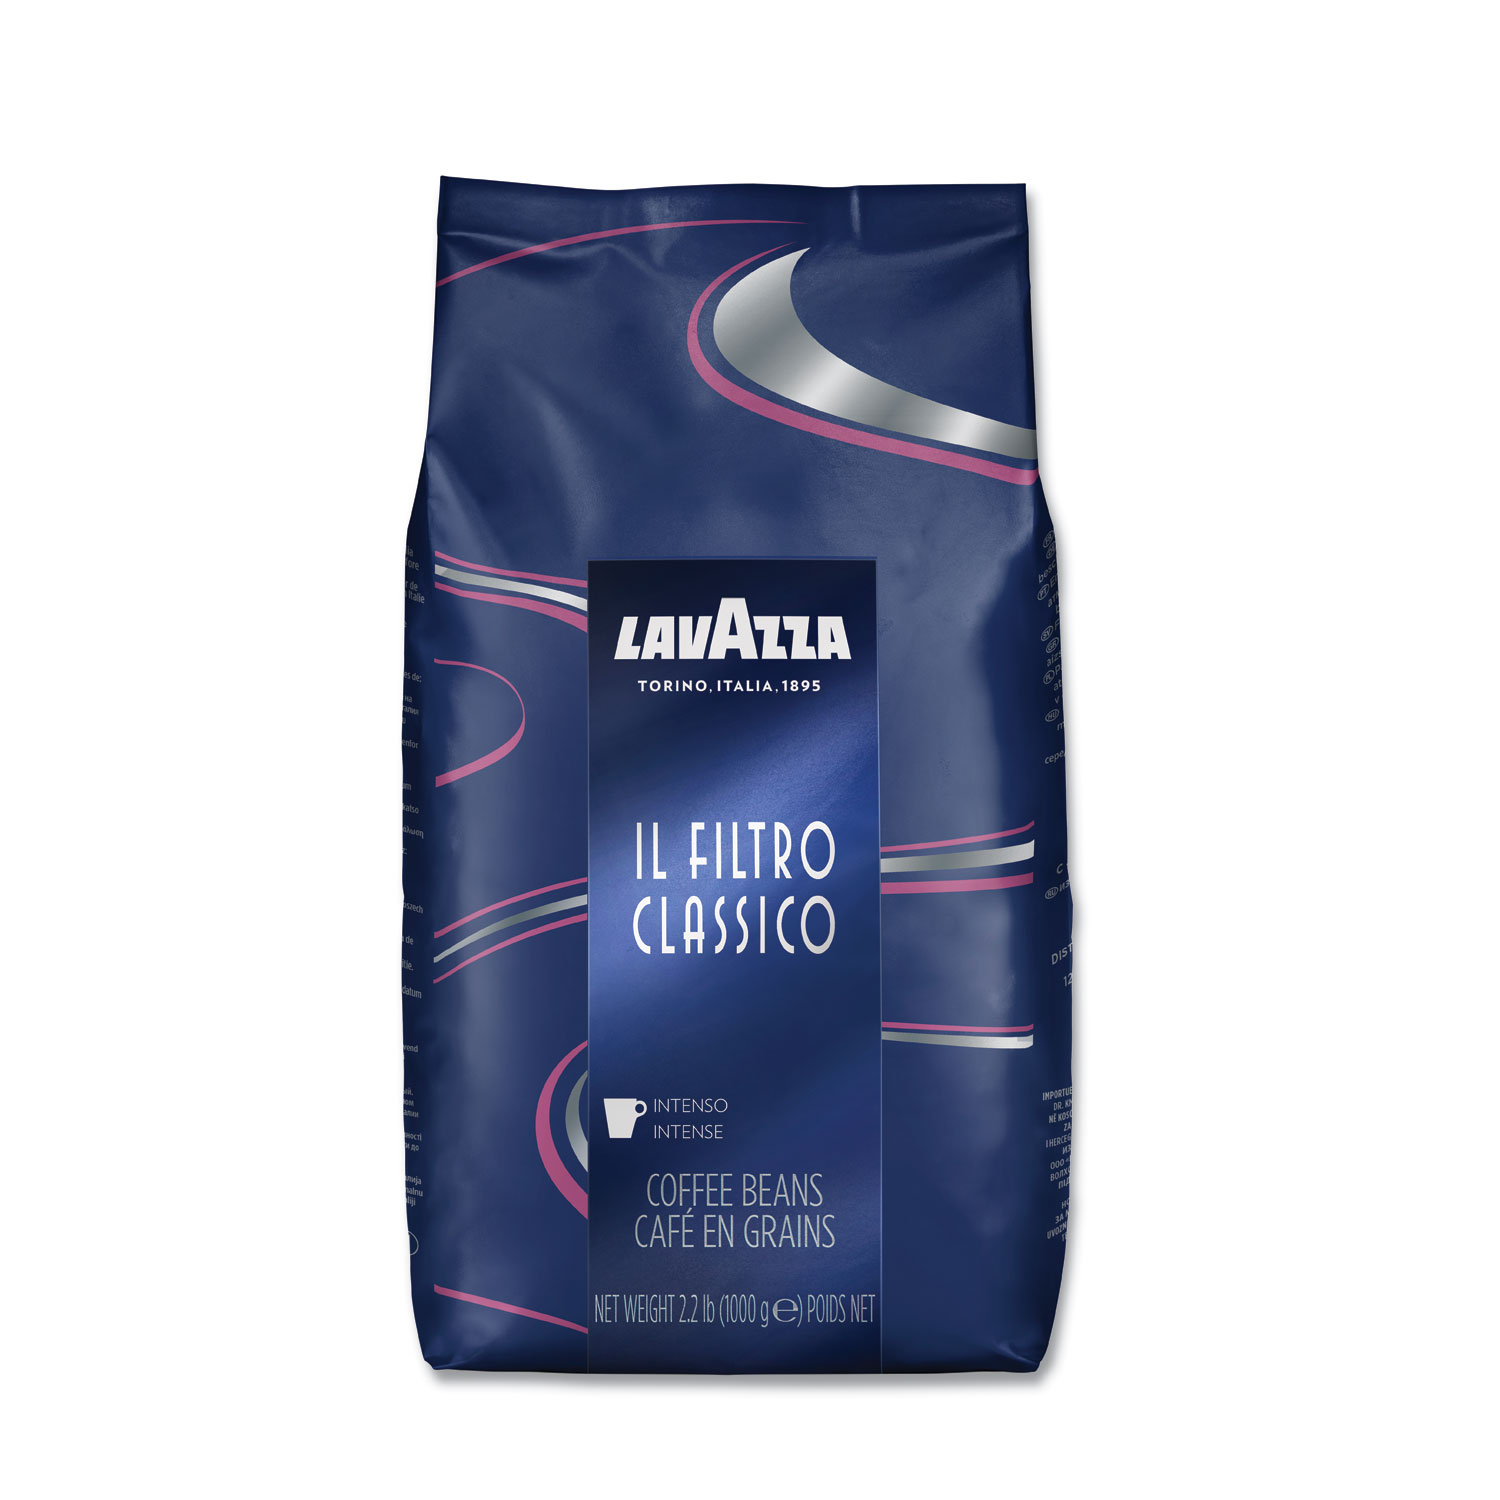  Lavazza 3445 Filtro Classico Whole Bean Coffee, Dark and Intense, 2.2 lb Bag (LAV3445) 